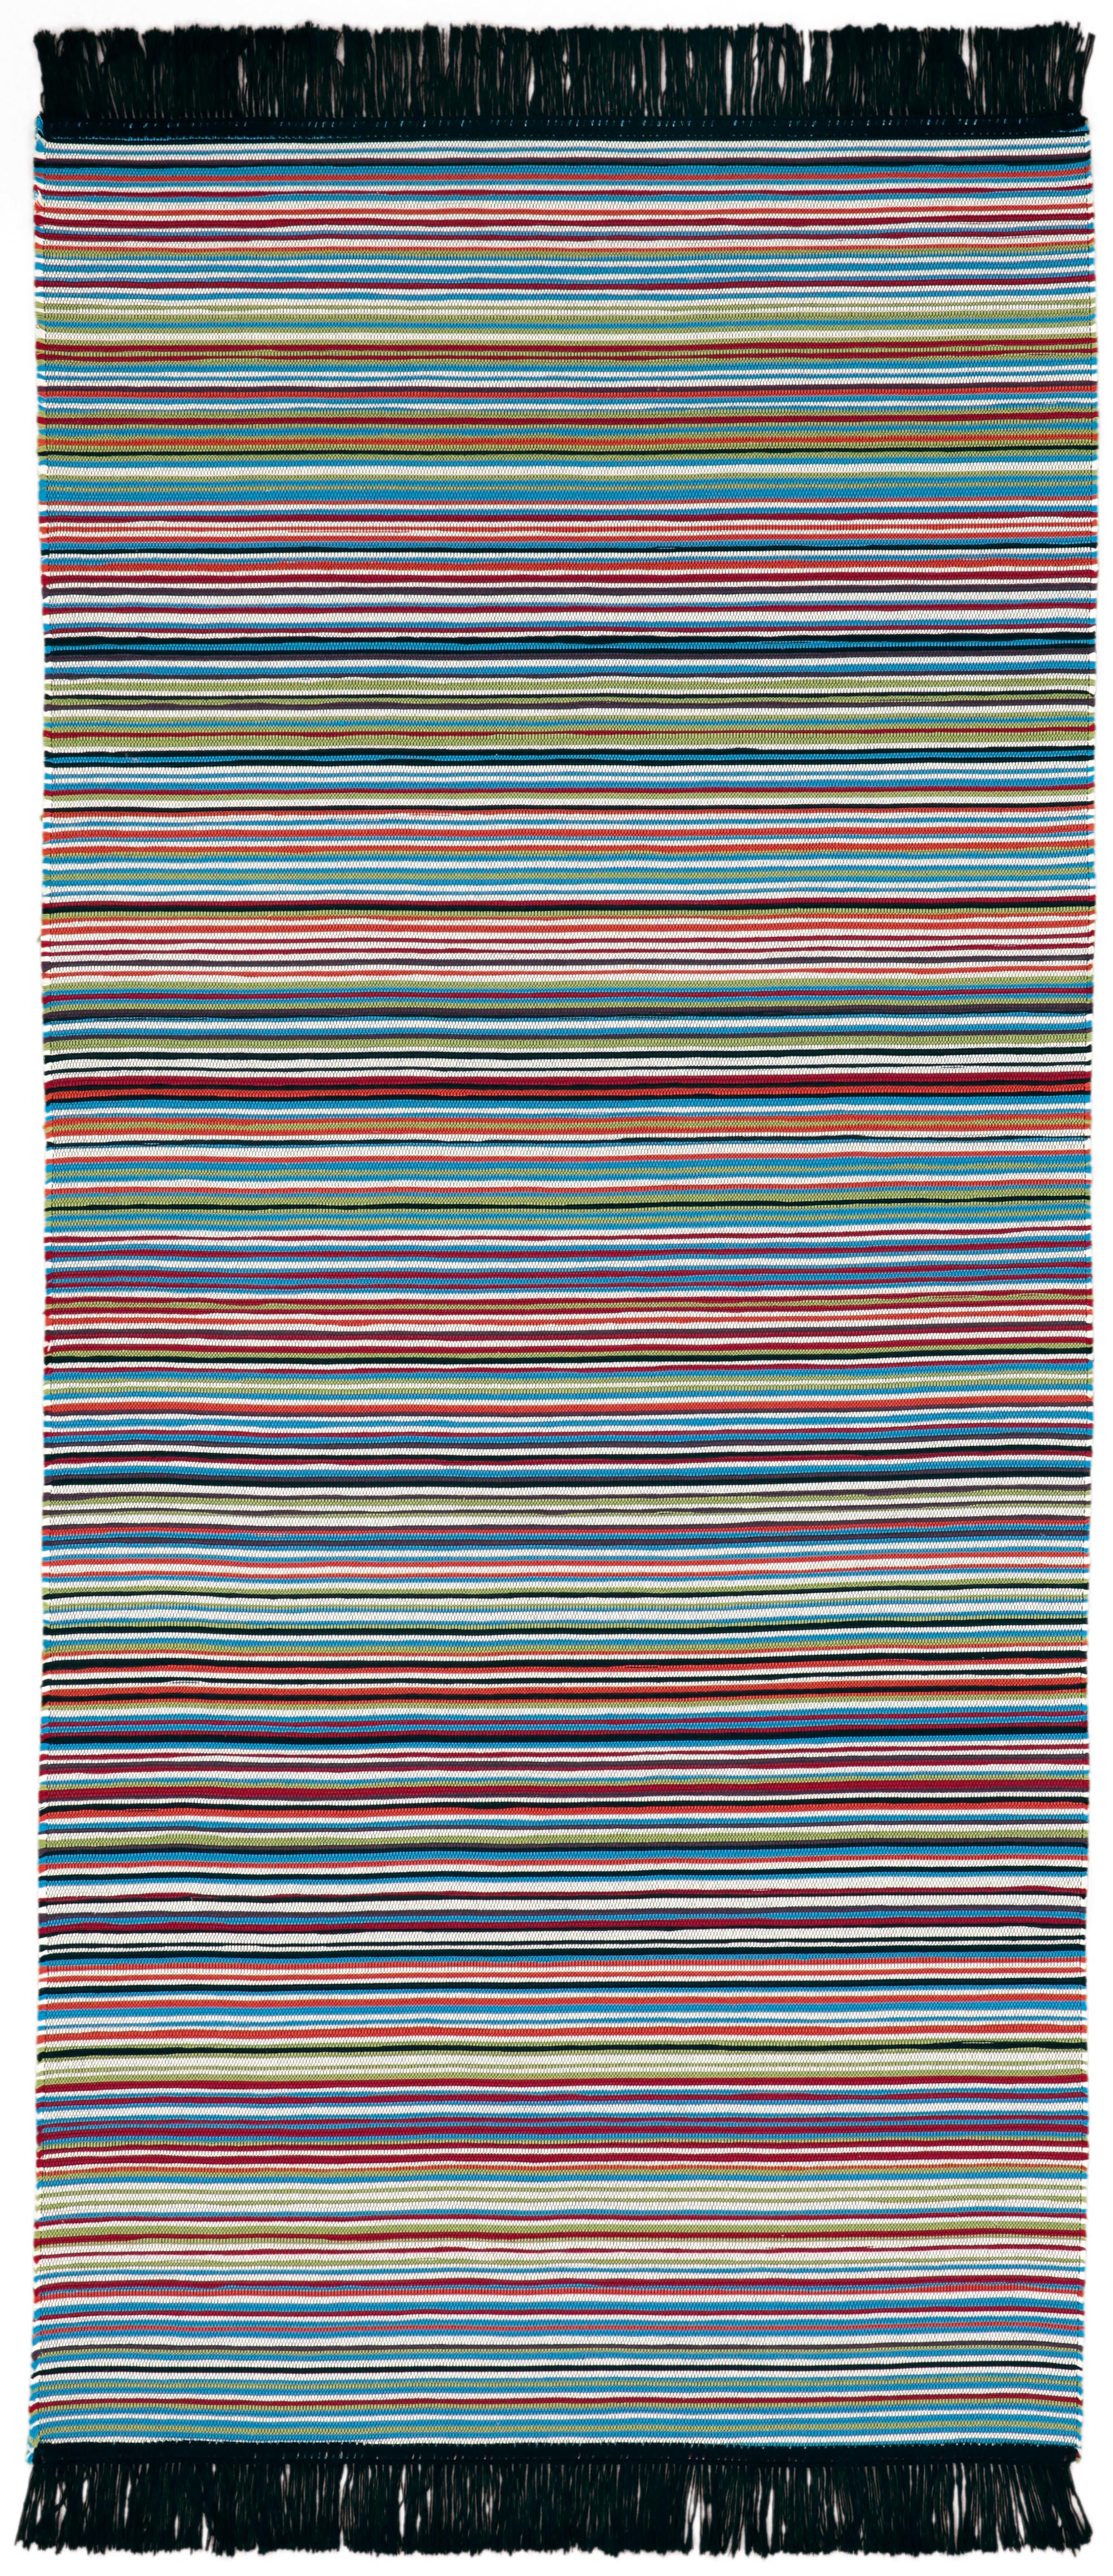 bunt gestreifter Fransen-Teppich "Stripe" aus Baumwolle in 80x200 cm